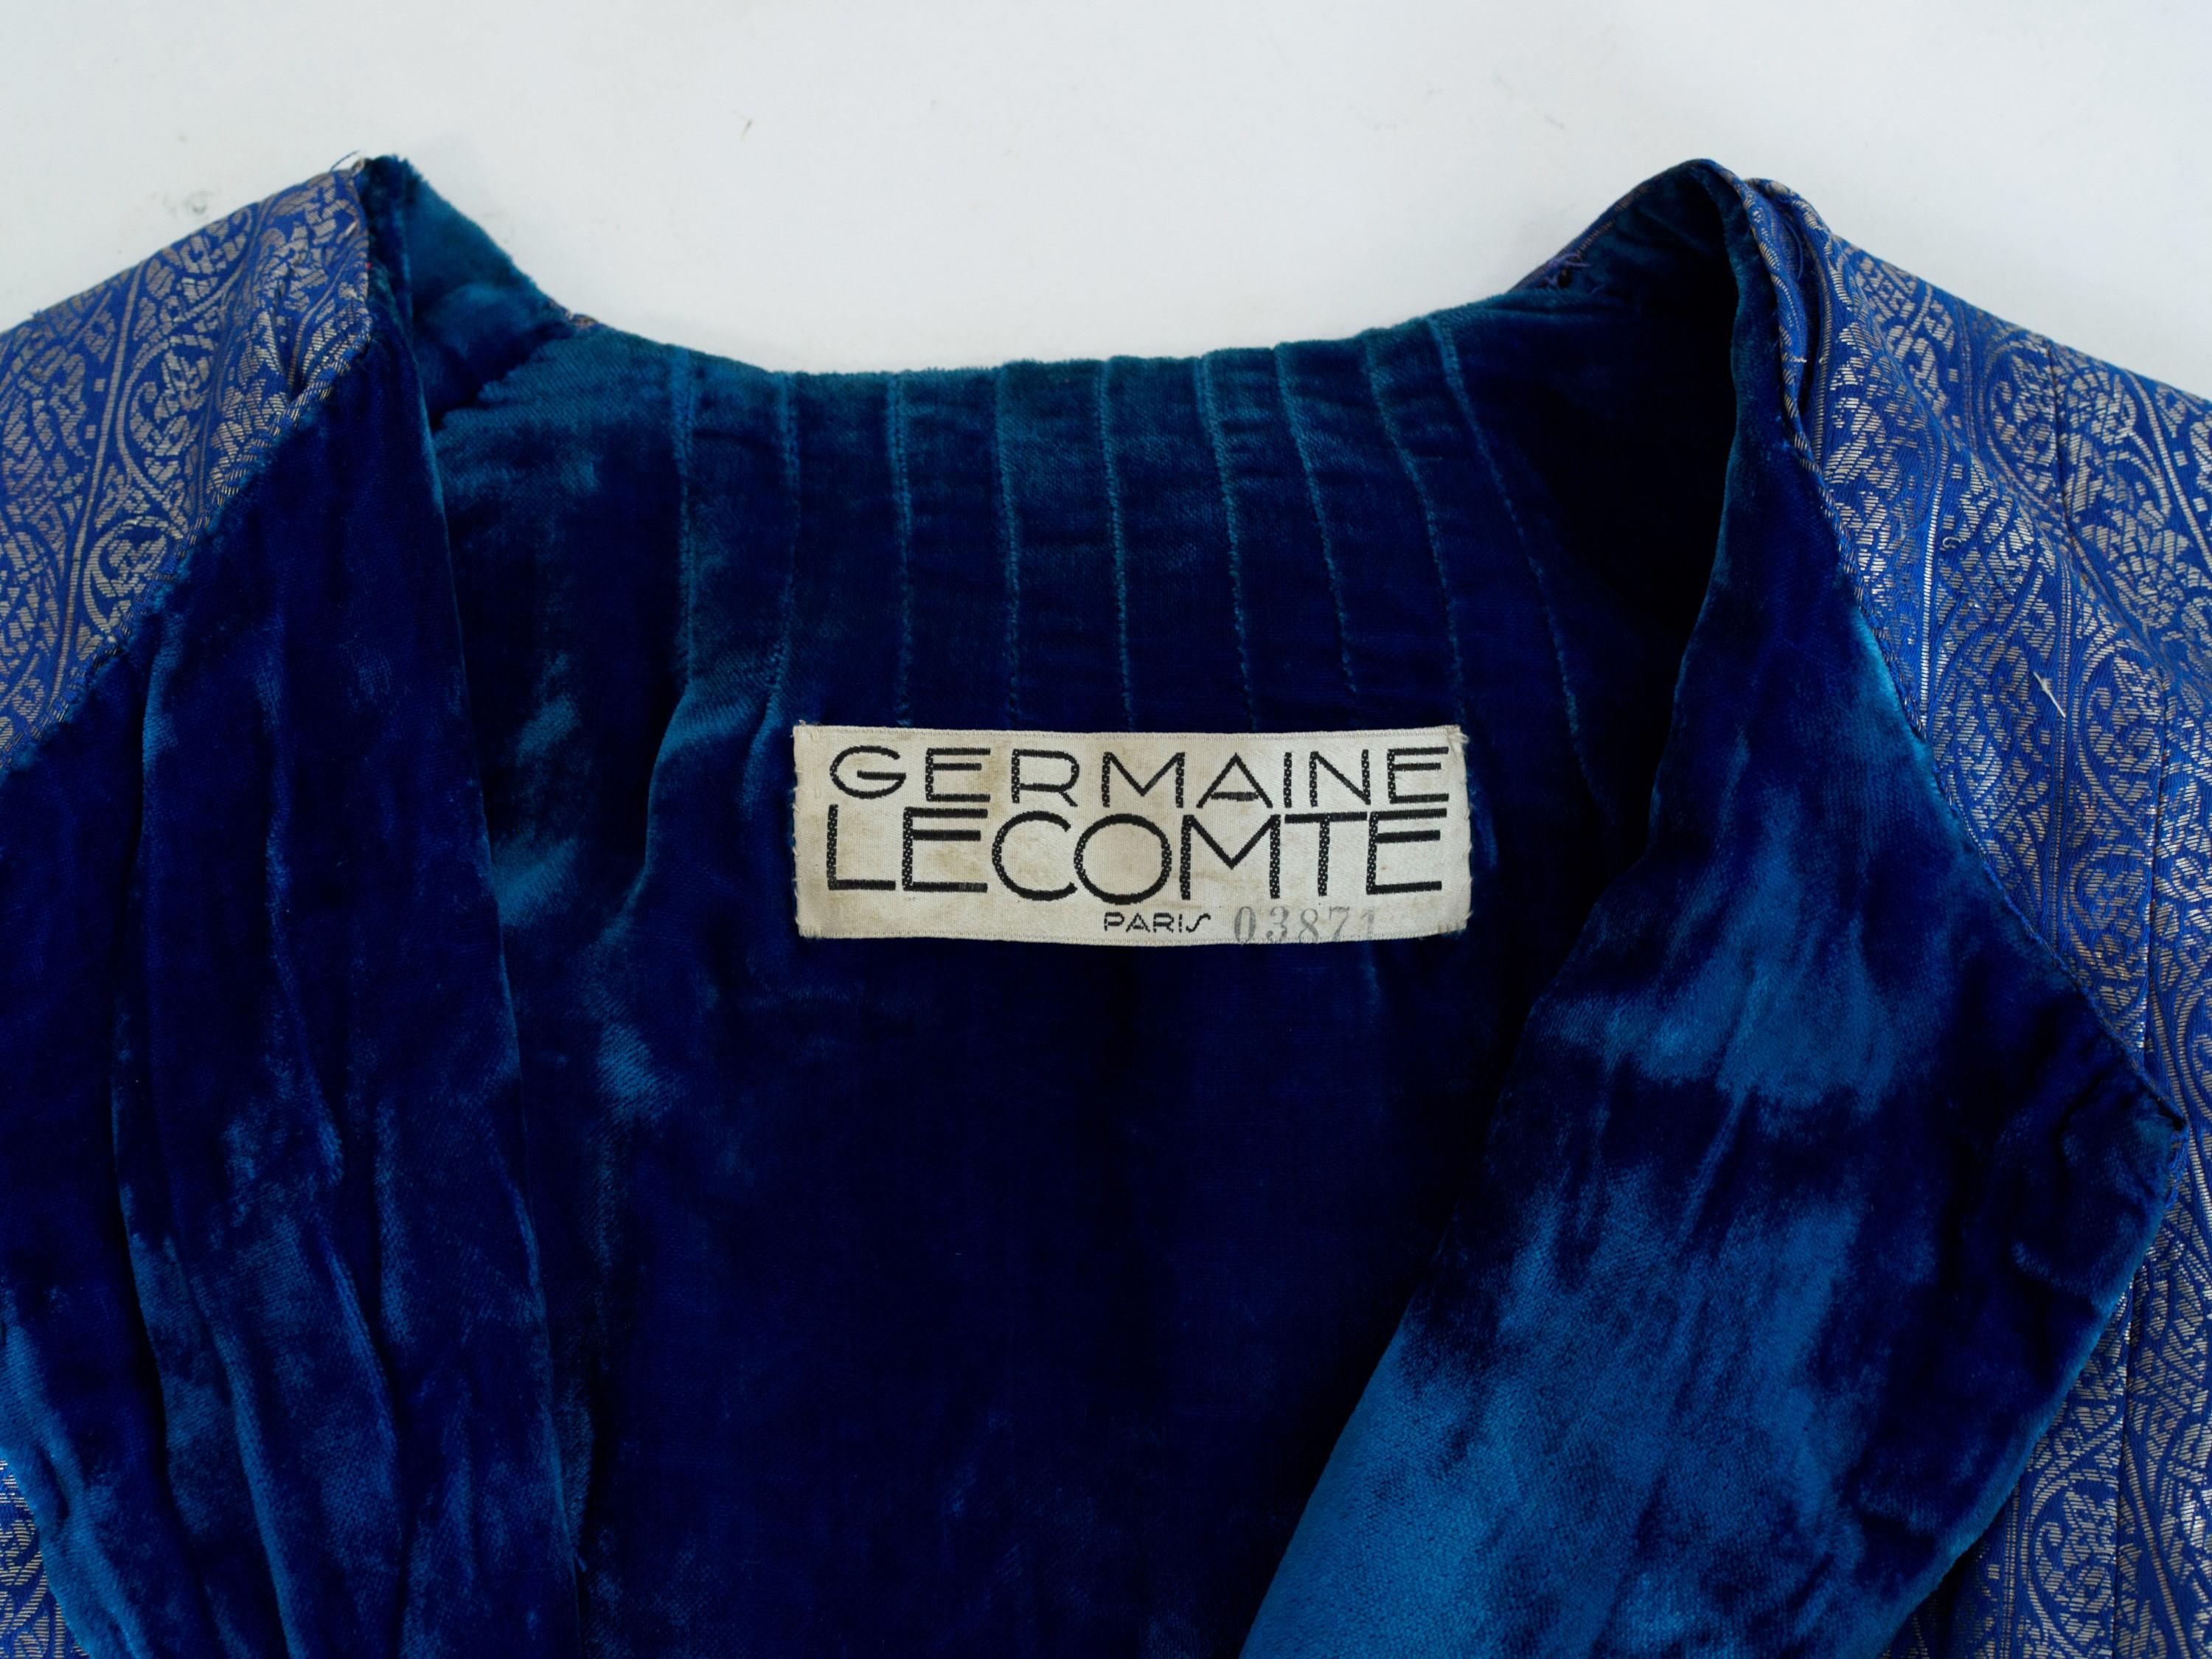 Um 1930

Frankreich

Wunderschöner Abendmantel aus blauer Lamé-Silberseide mit dem Markenzeichen von Germaine Lecomte, einem berühmten Pariser Haus aus den 1930er Jahren. Gerader Schnitt ohne Kragen mit Passe in Dreiecken, die dem unteren Teil des